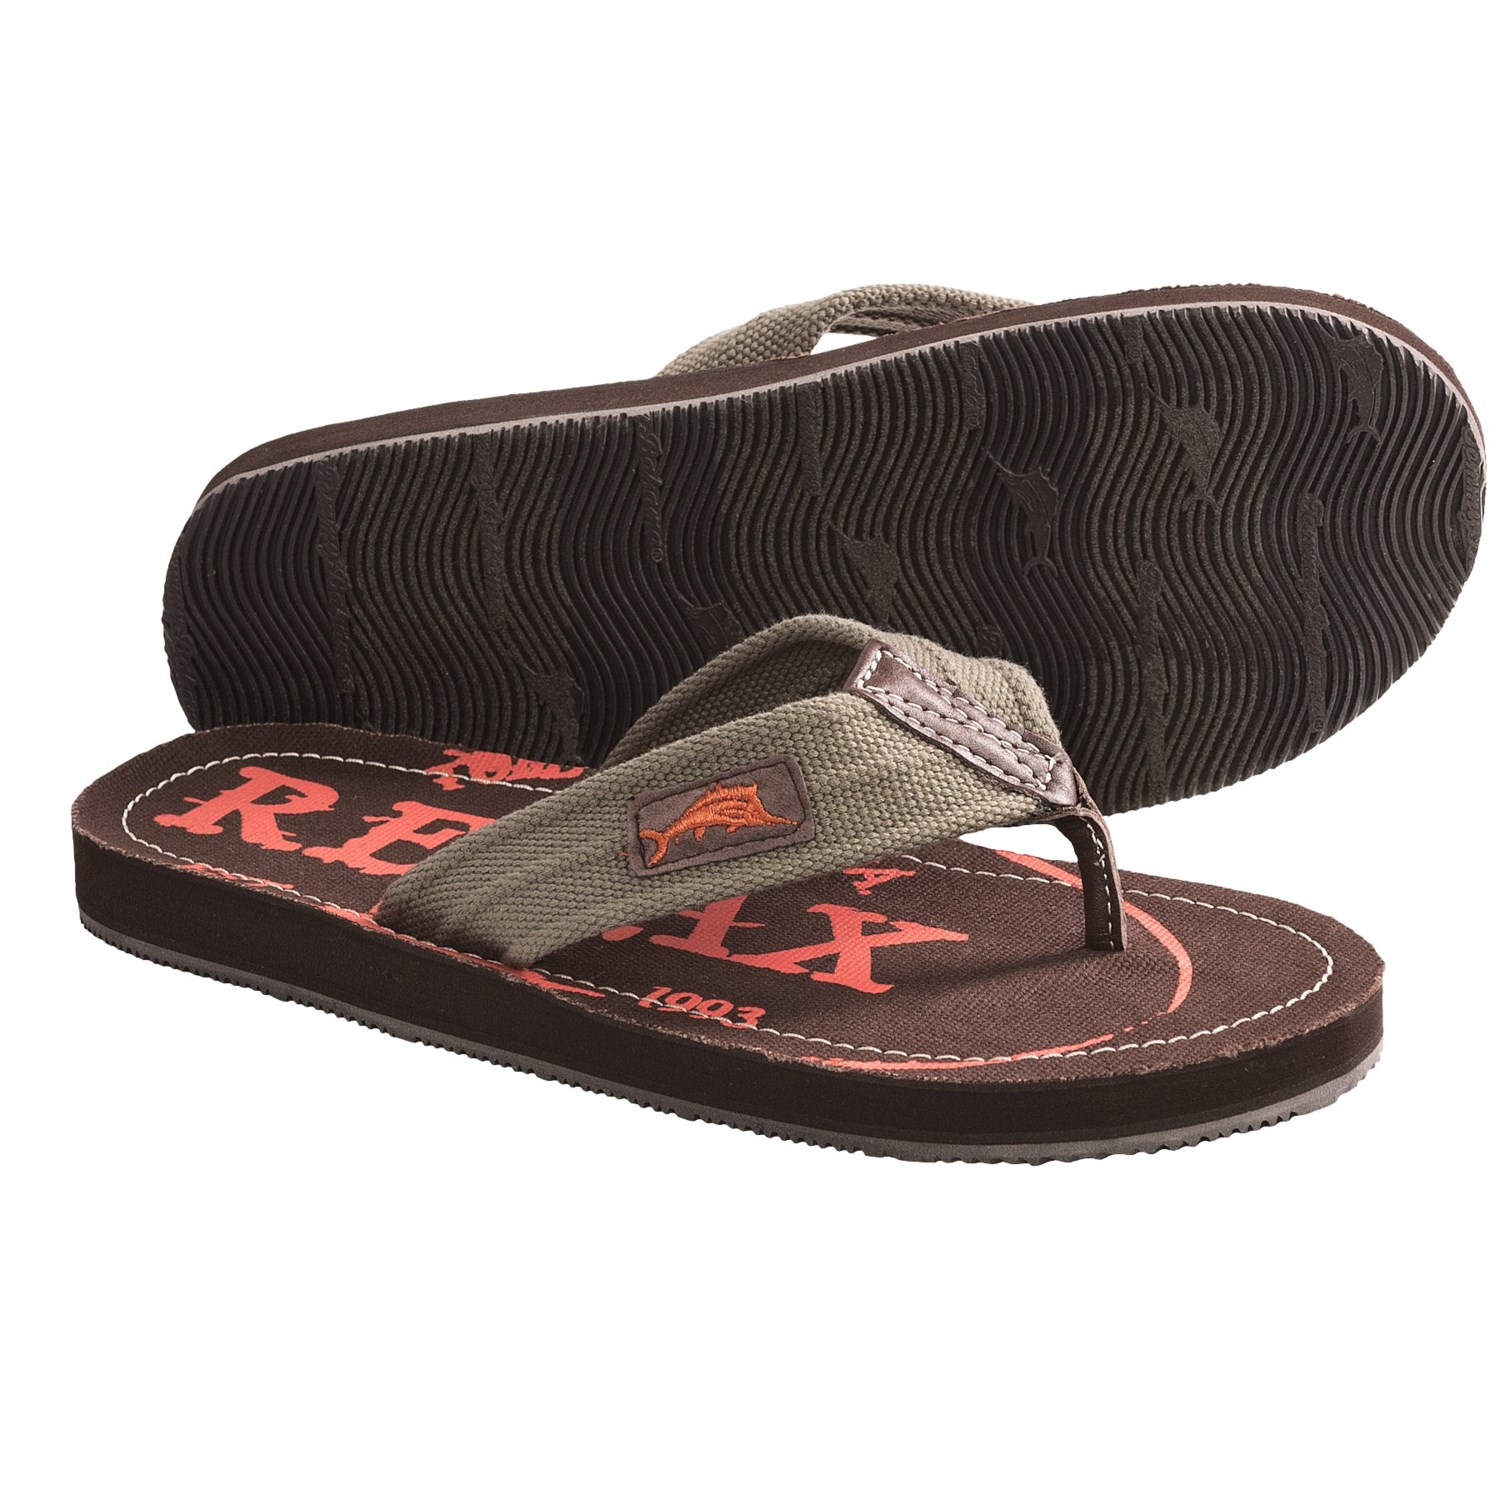 Tommy Bahama Beachwalker Sandals - Flip-Flops (For Men) - Save 76%